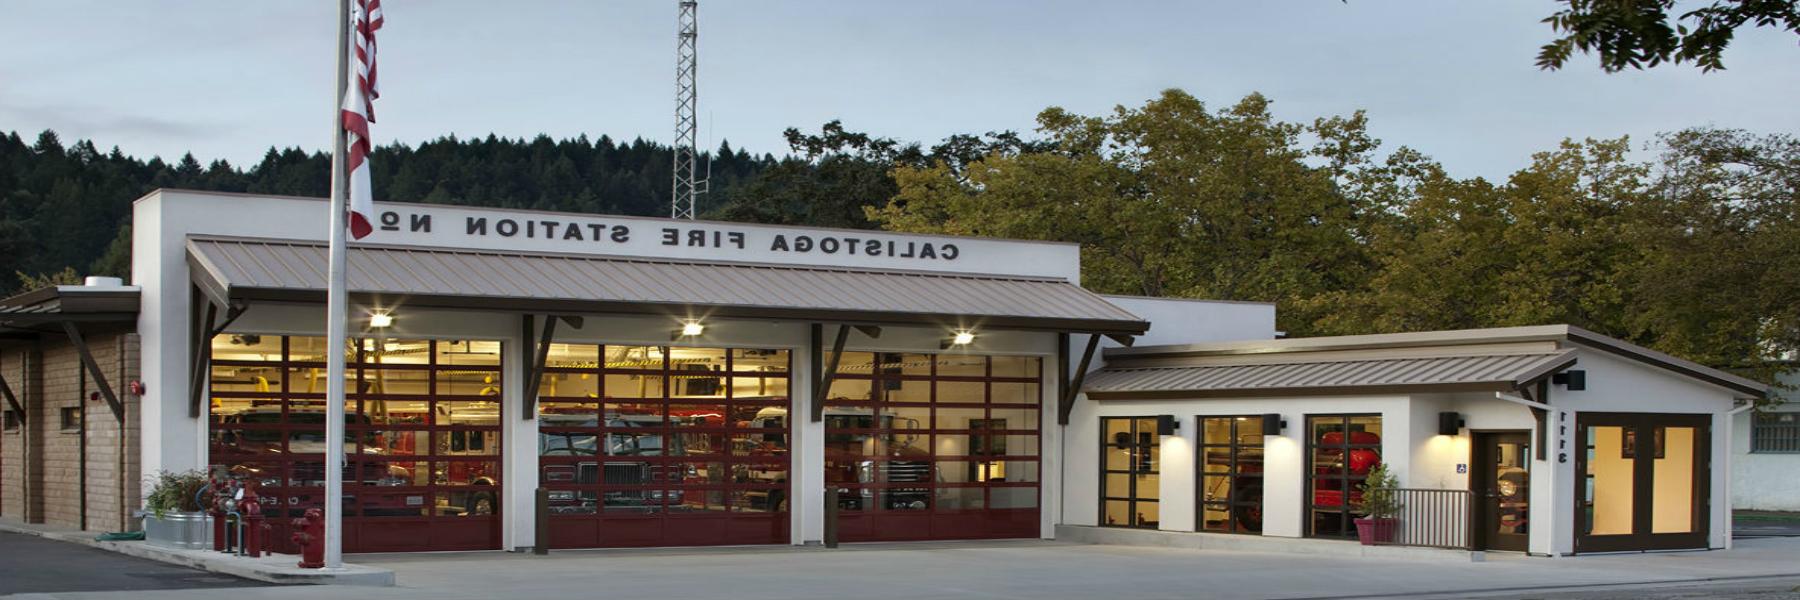 Calistoga Fire Station